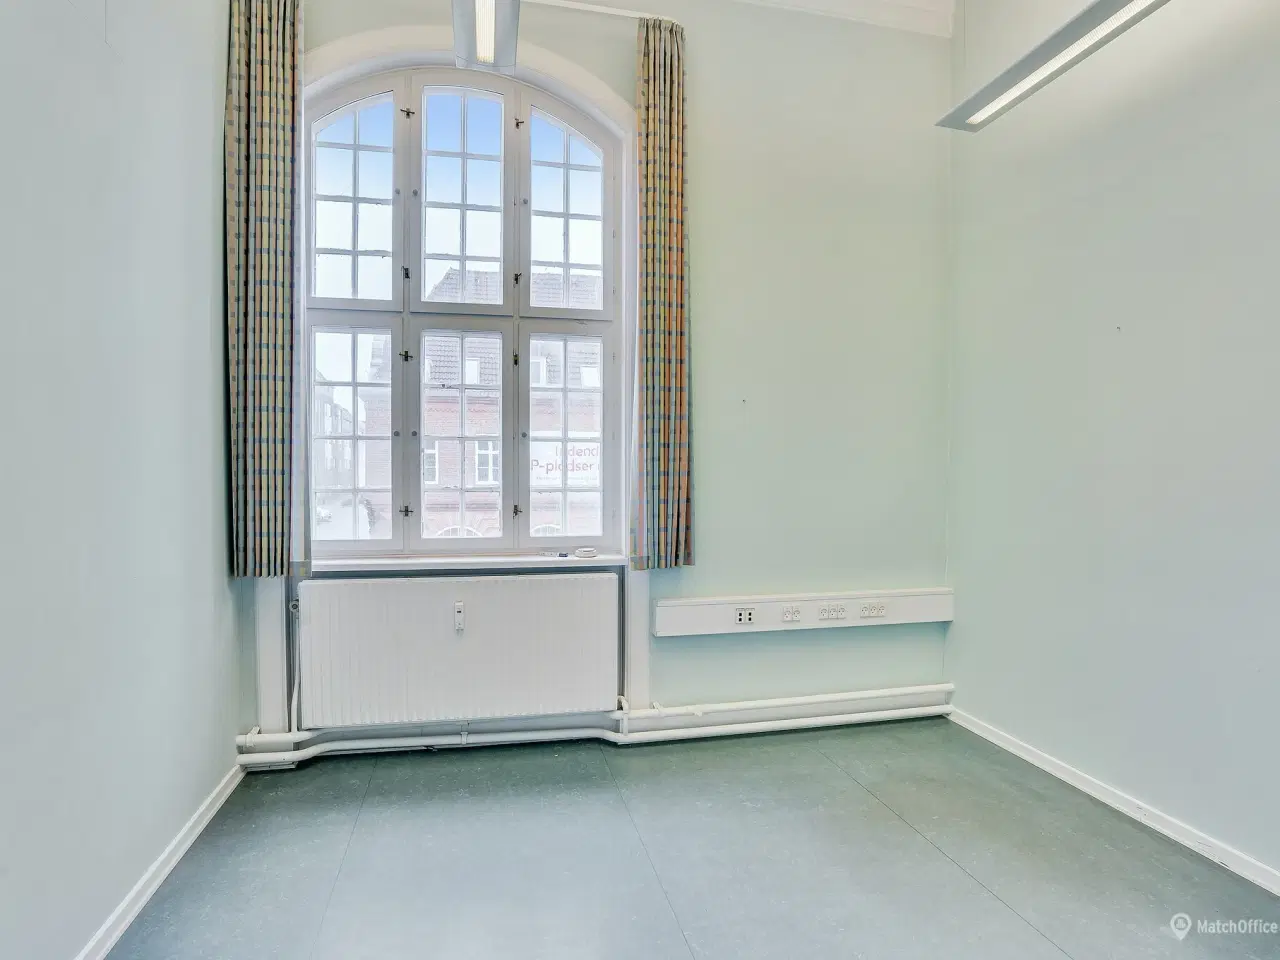 Billede 8 - Spændende kontorlokaler ved Indkøbscentret BROEN, i Esbjerg.